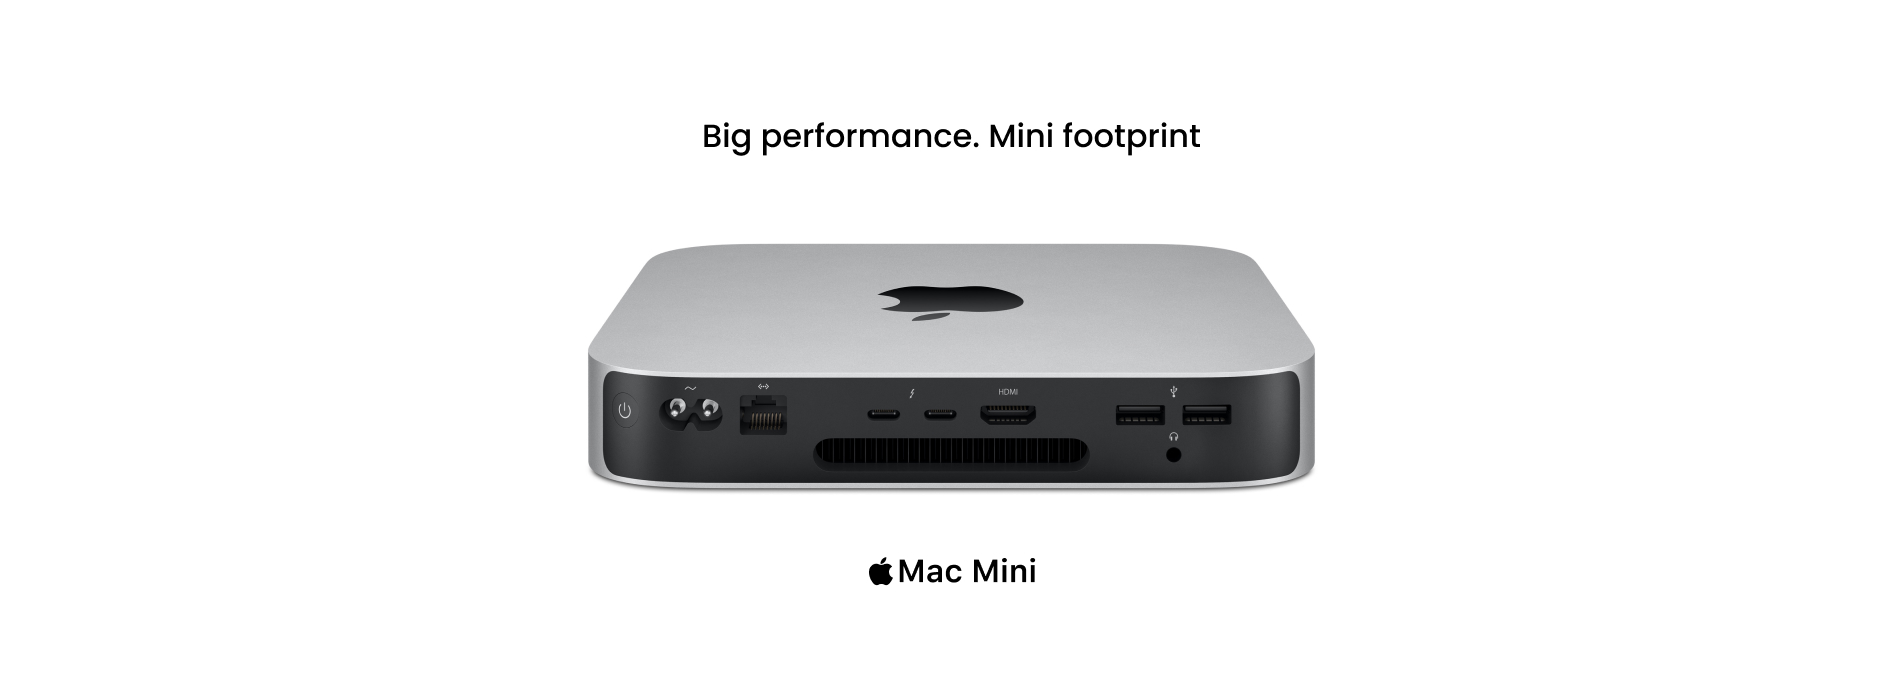 Mac mini